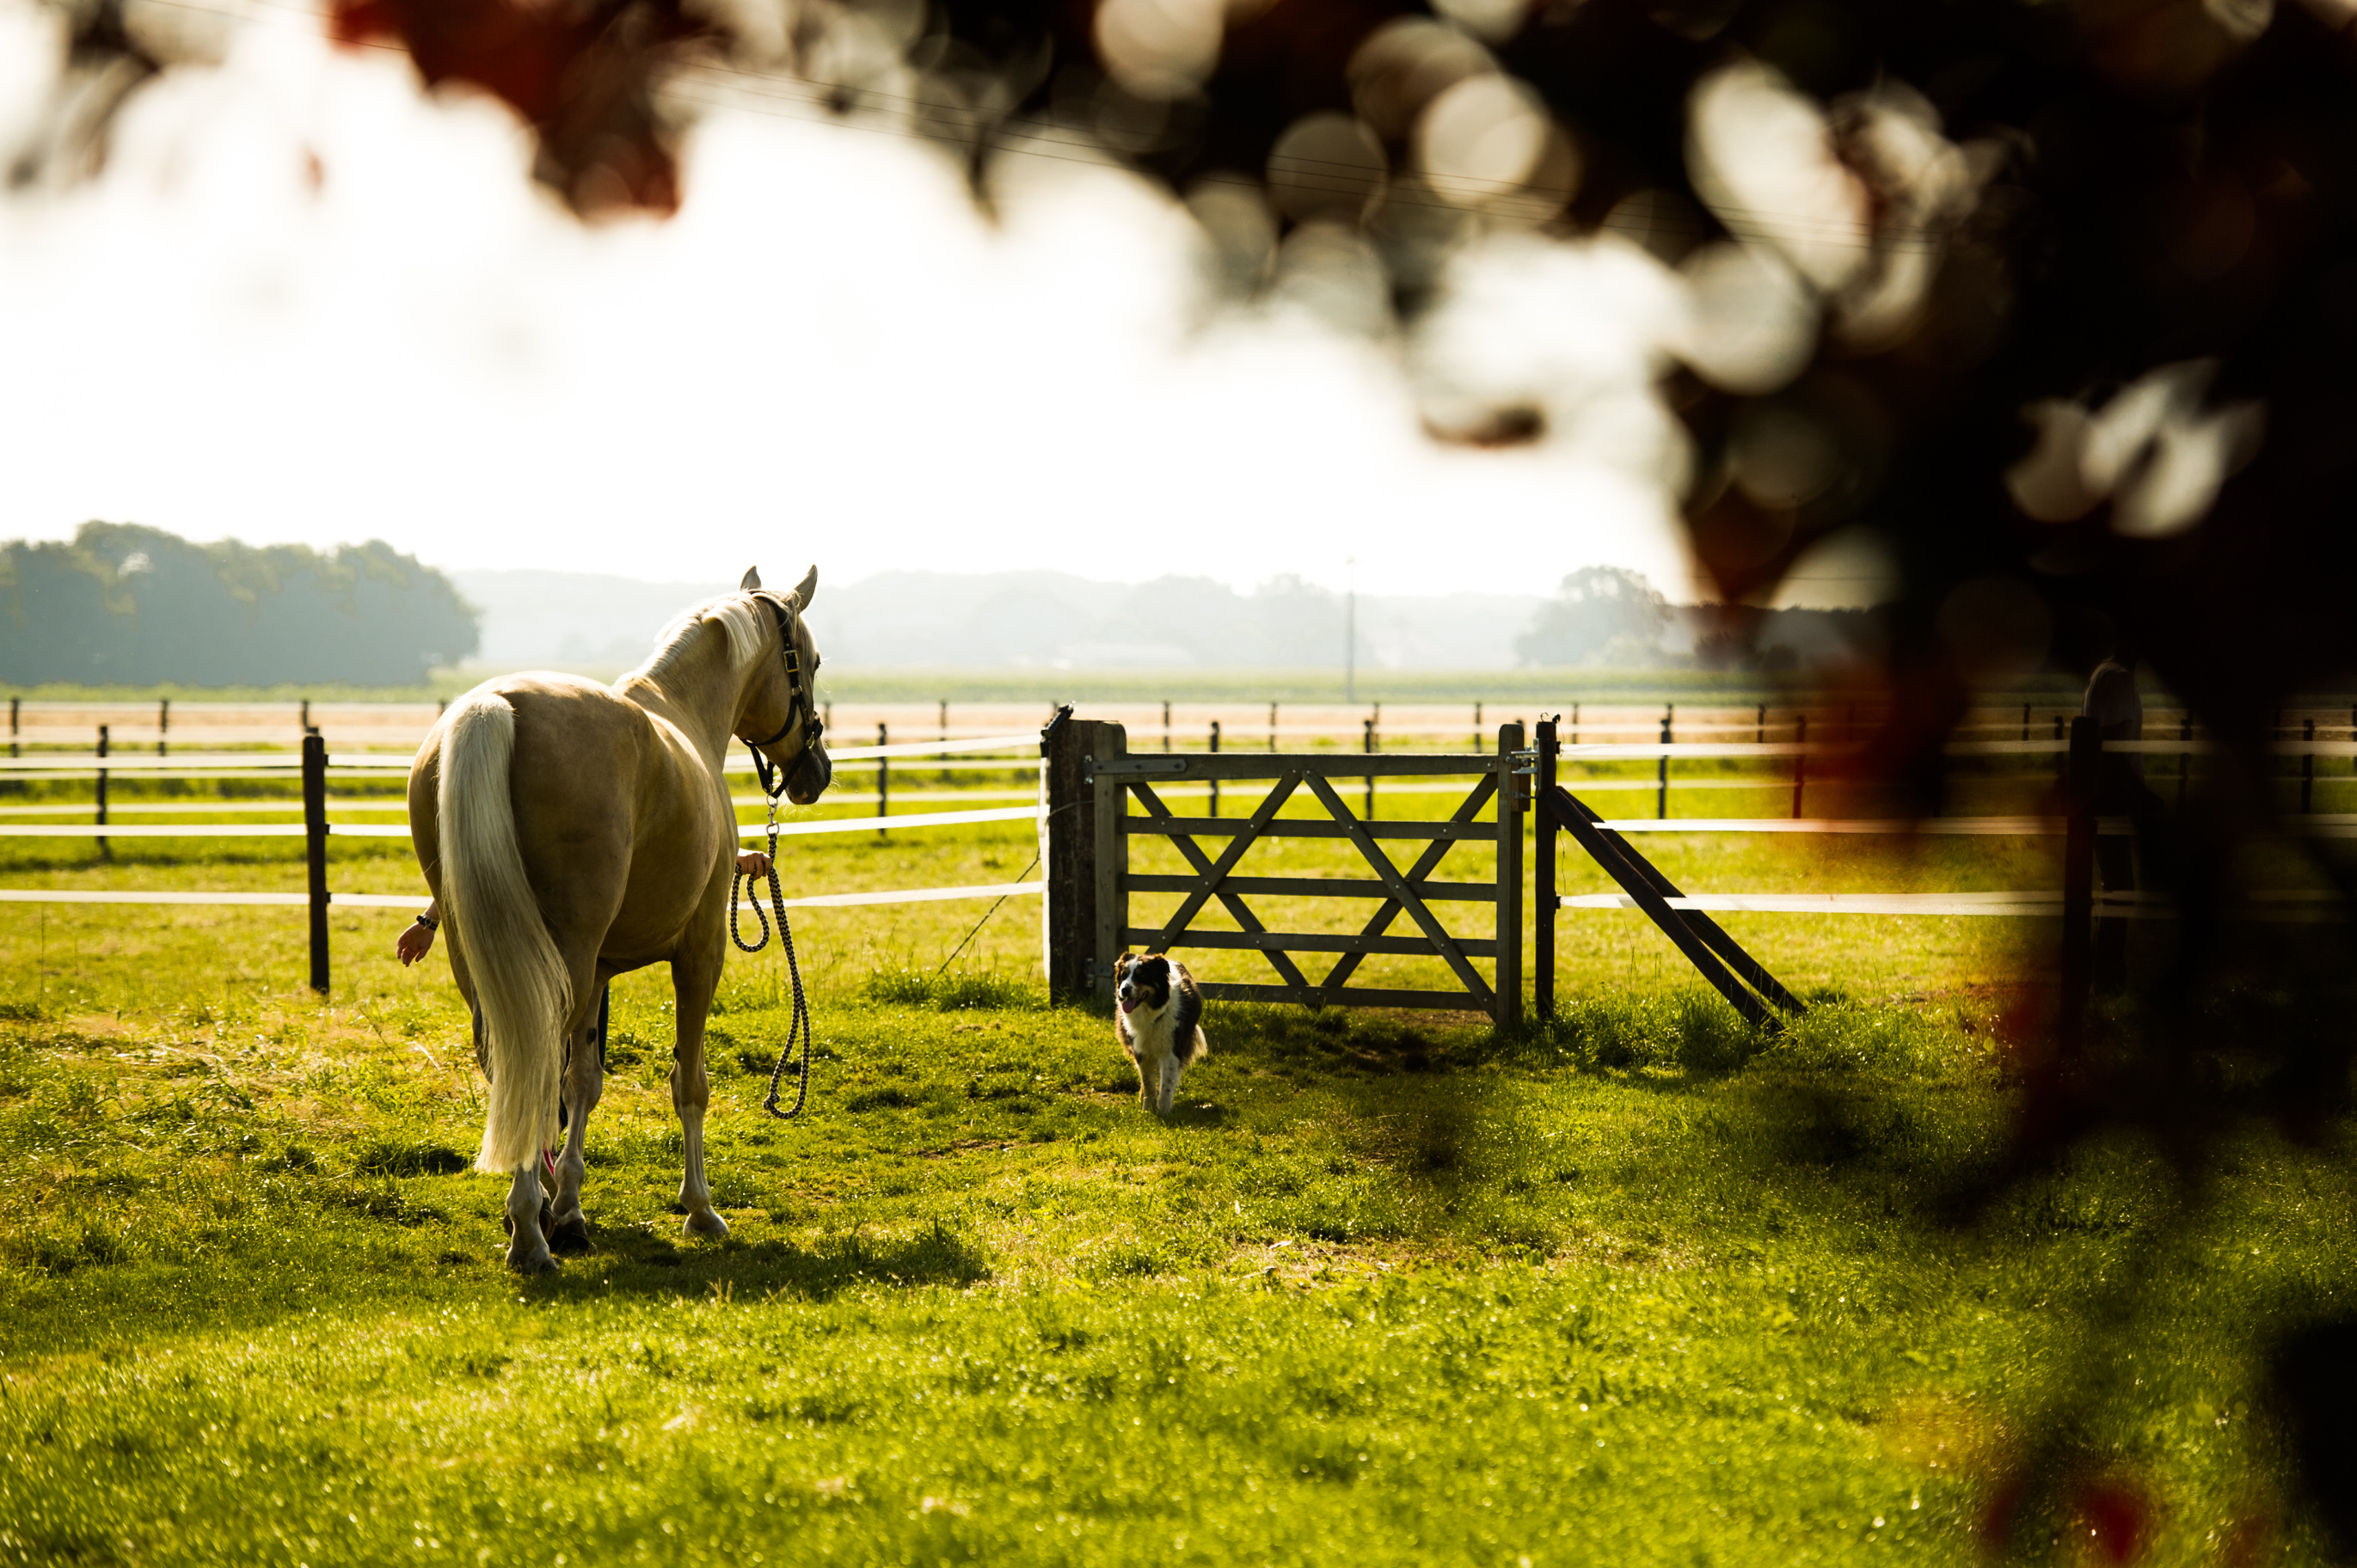 Ein falbenfarbenes Pferd wird am Halfter auf die Weide gebracht. Die Morgensonne scheint warm auf die saftig grünen Wiesen. Es ist friedlich.